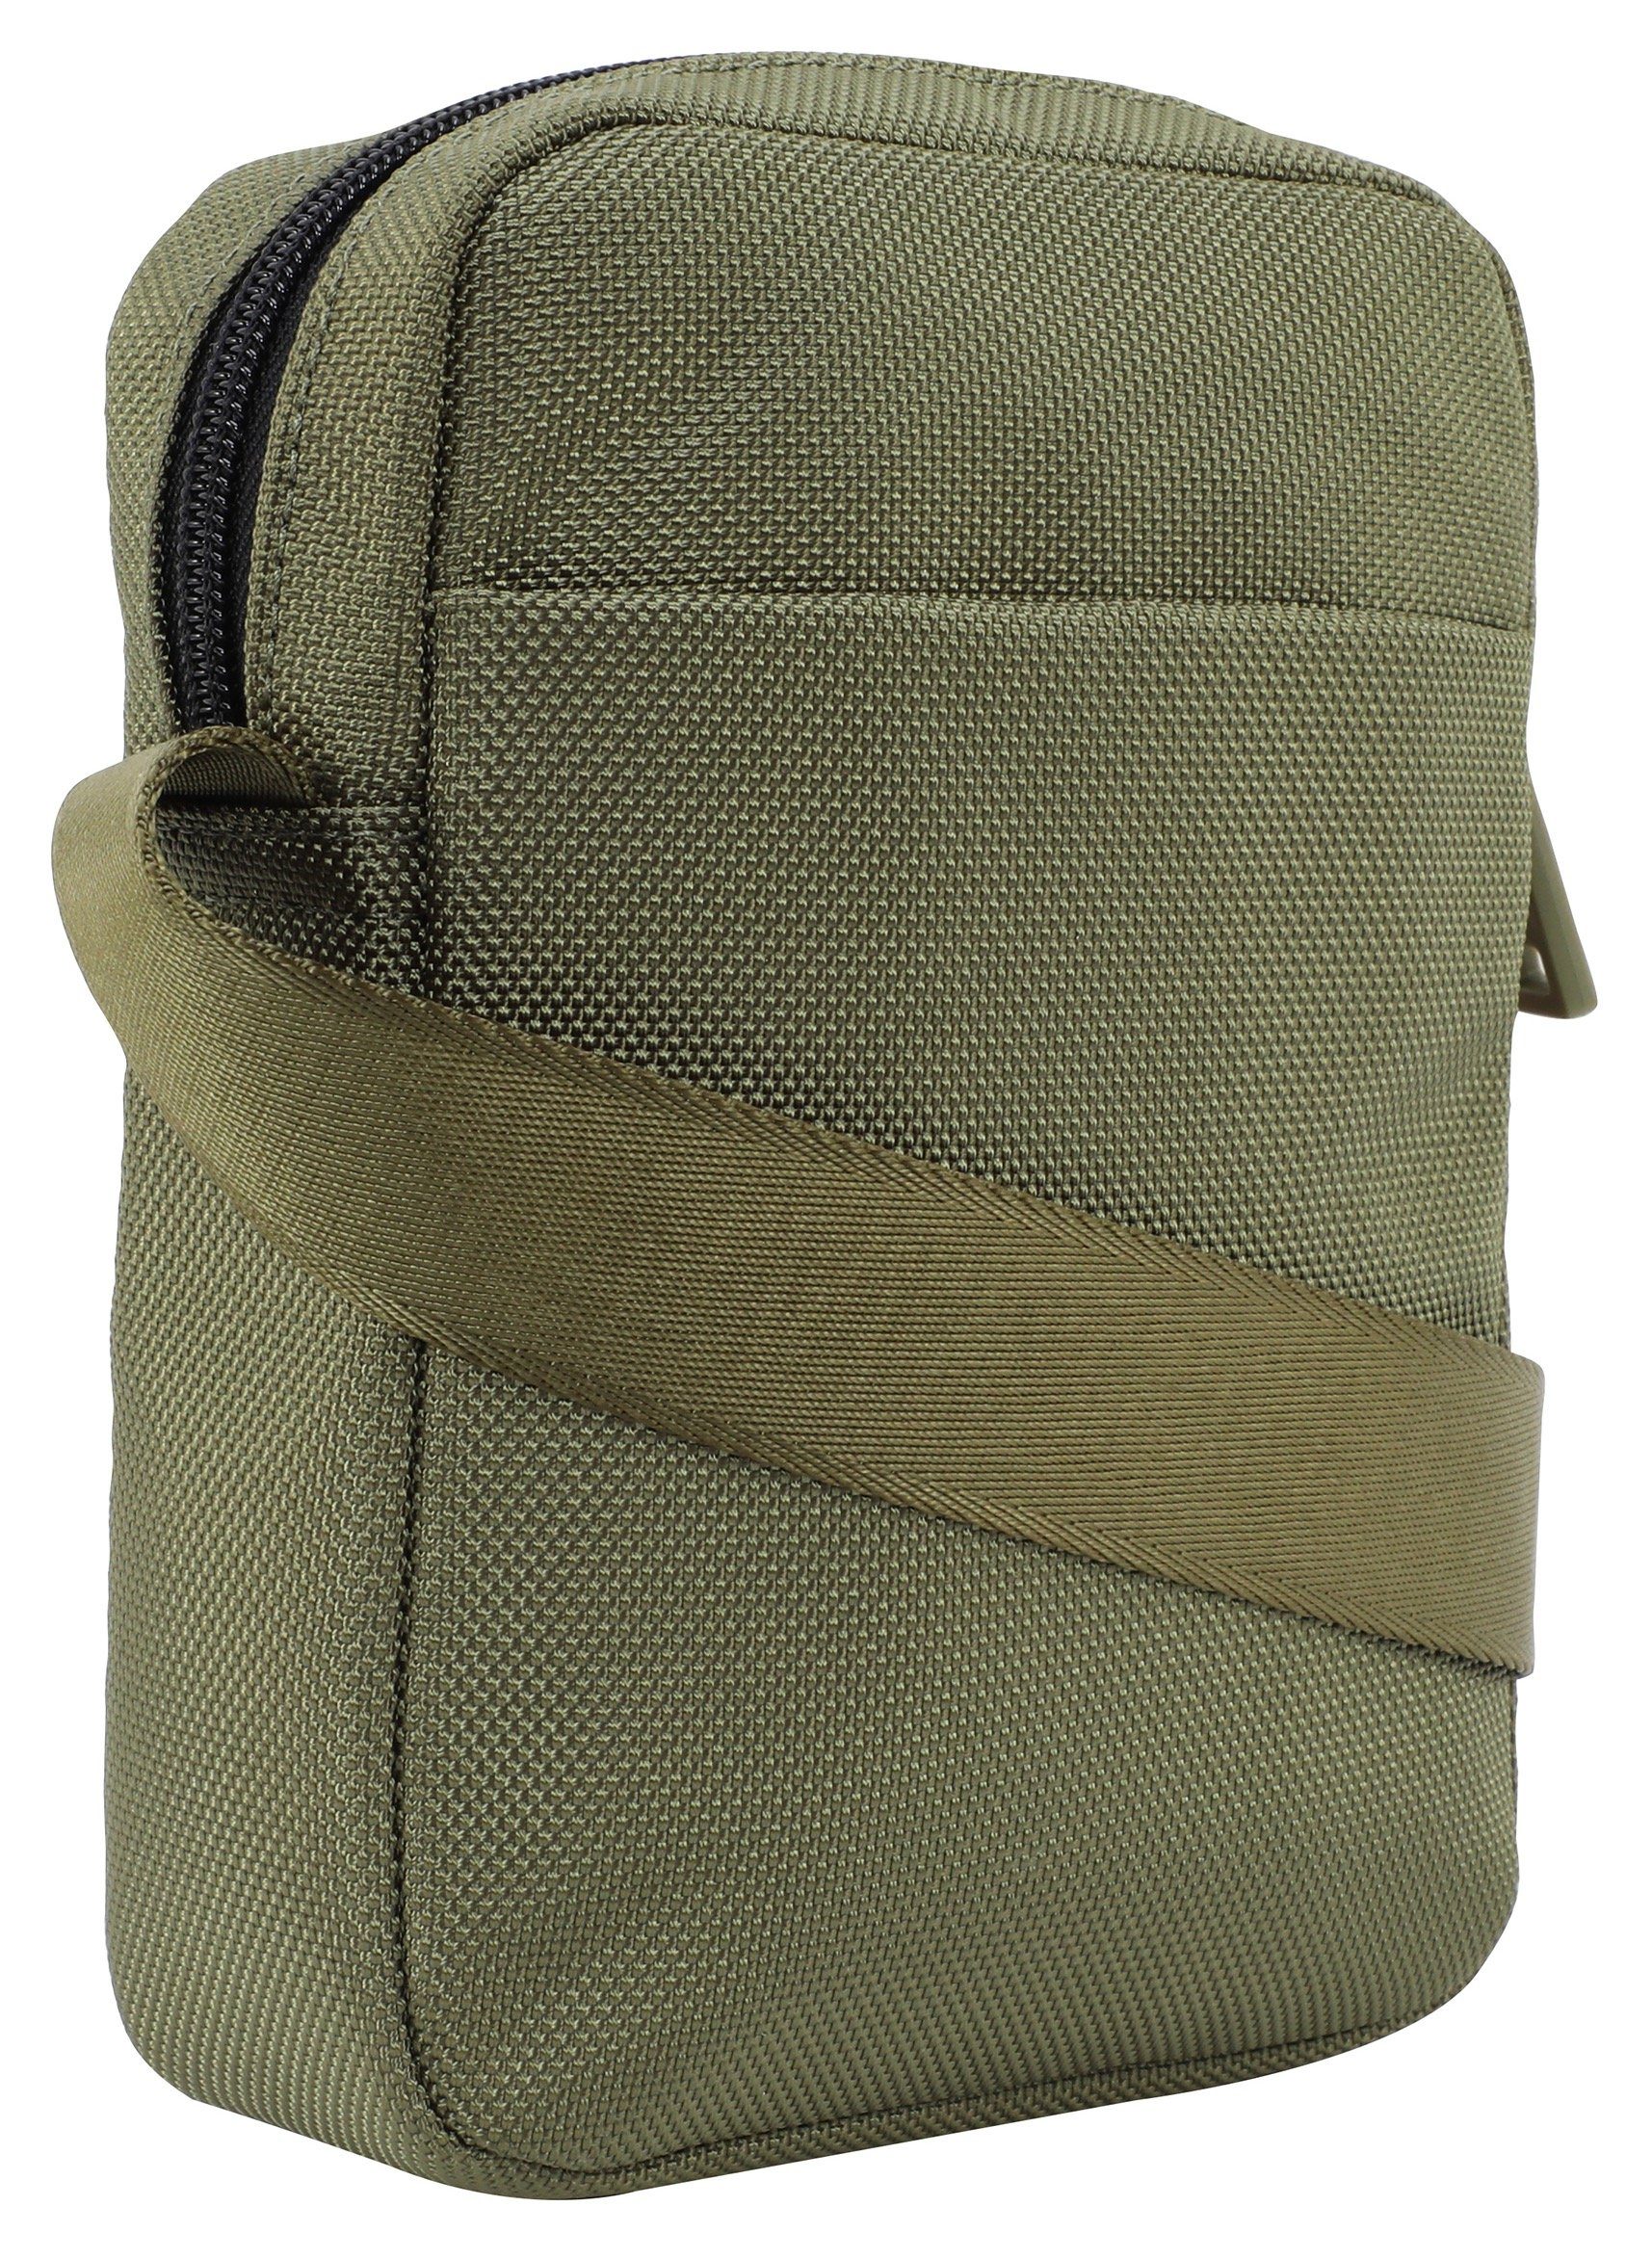 Joop Jeans Umhängetasche im praktischen Design rafael dunkelgrün xsvz, modica shoulderbag